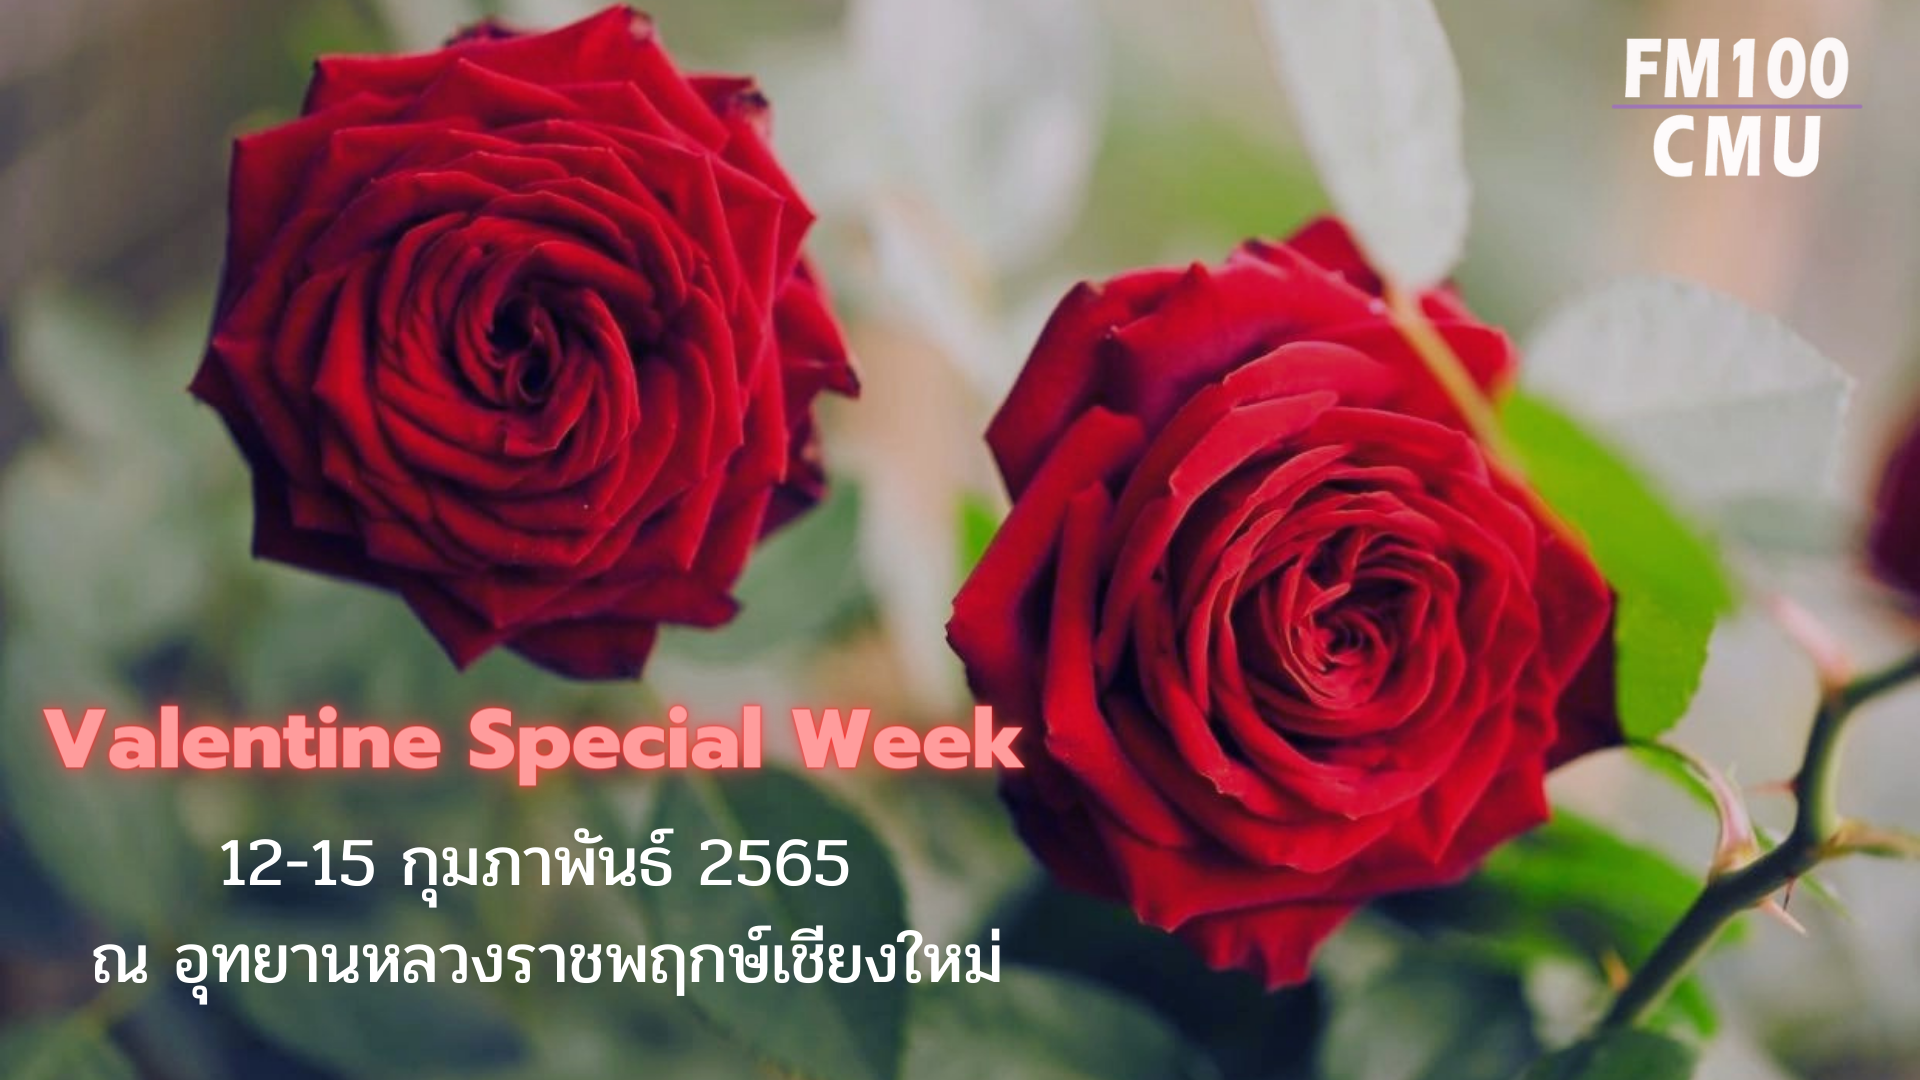 อุทยานหลวงราชพฤกษ์เชียงใหม่ จัดกิจกรรม Valentine Special Week ระหว่างวันที่ 12-15 กุมภาพันธ์ 2565